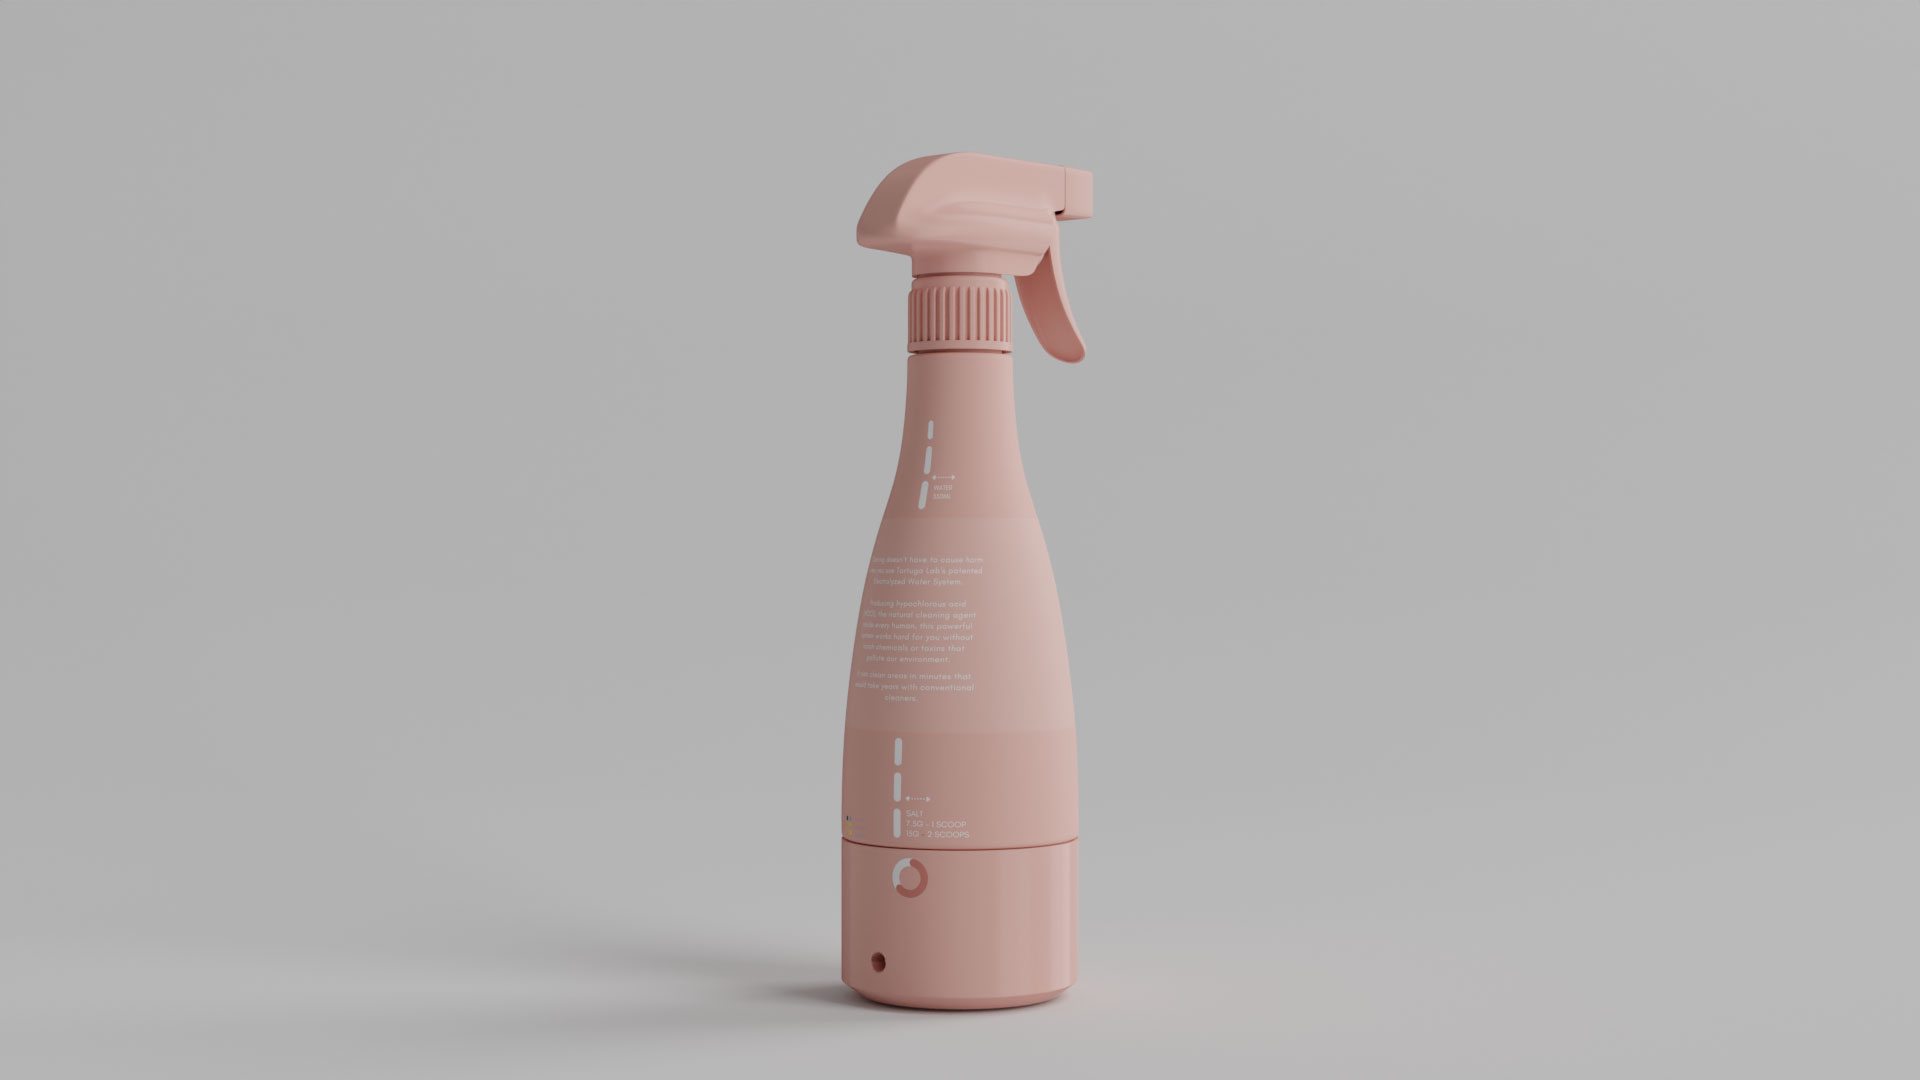 Spray Bottle IN Blender